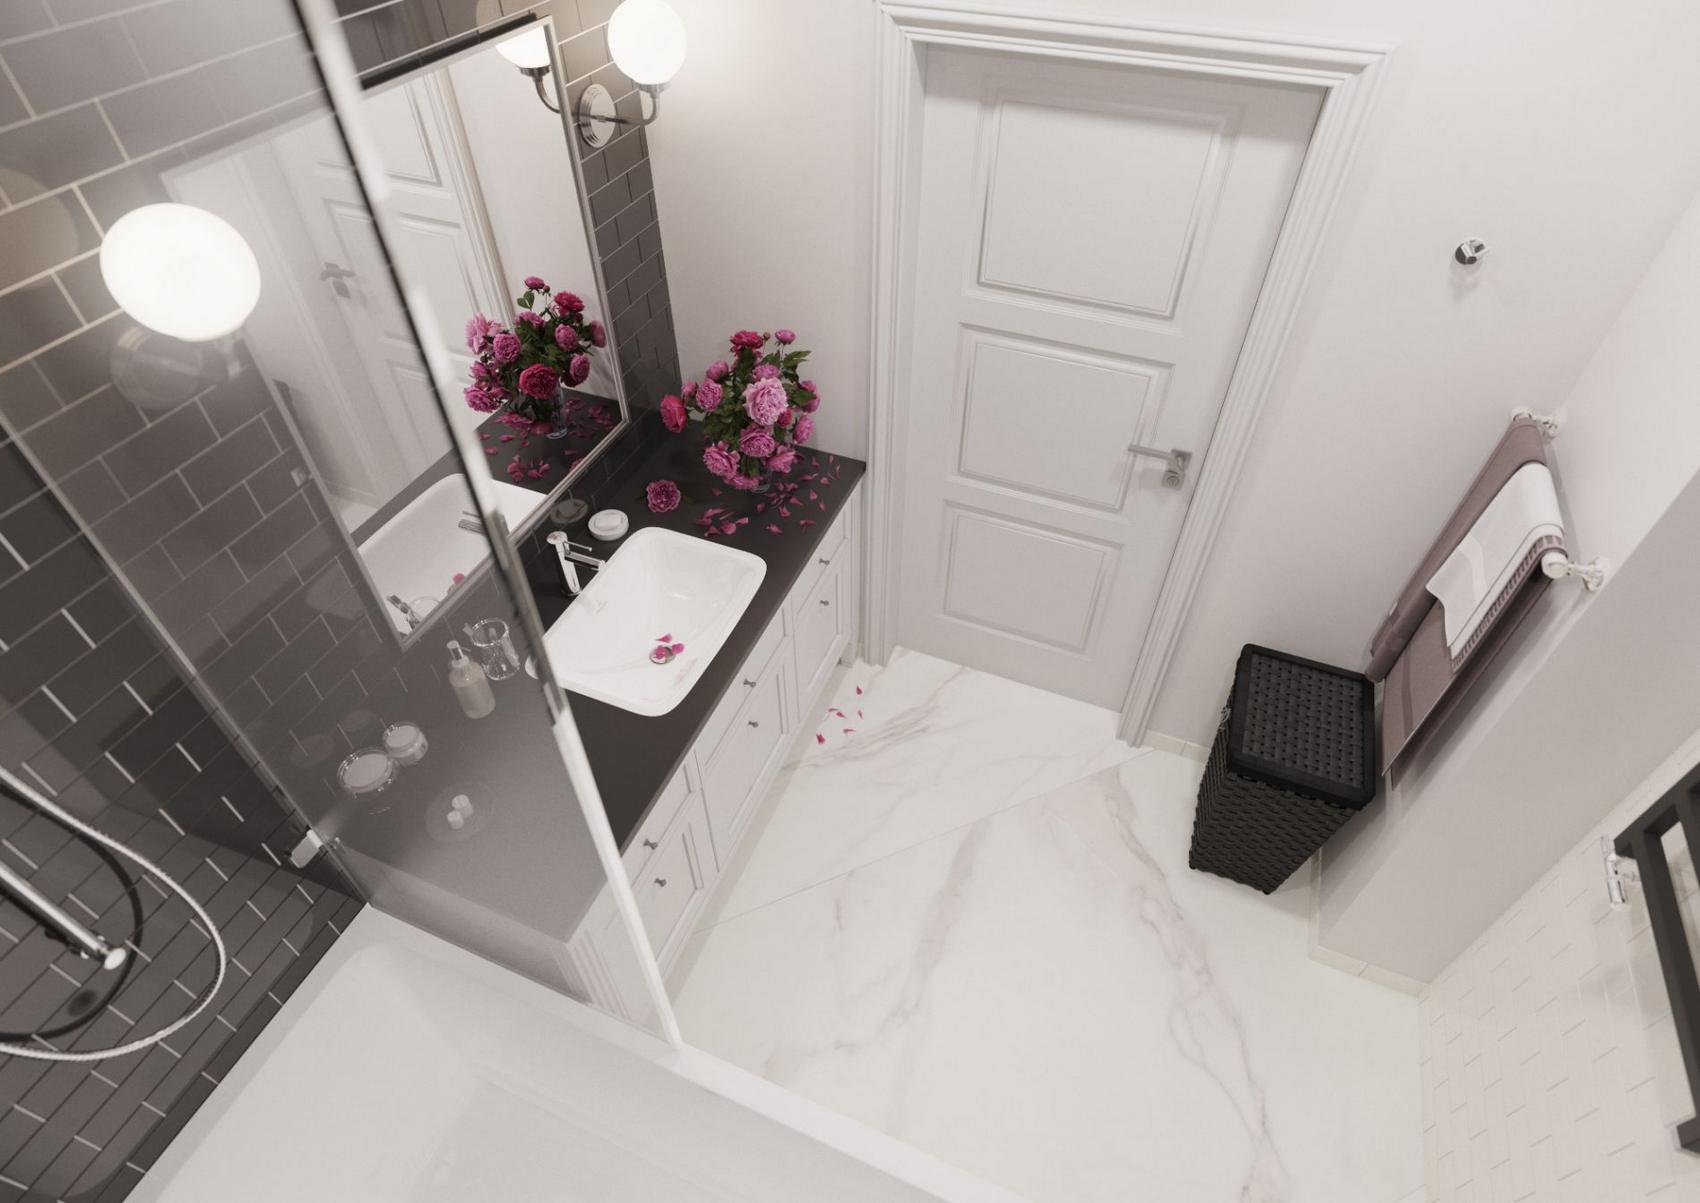 Hình ảnh phòng tắm được chụp từ trên cao với bức tường trắng tinh, sàn nhà lát đá cẩm thạch đường vân nhẹ nhàng, tự nhiên.